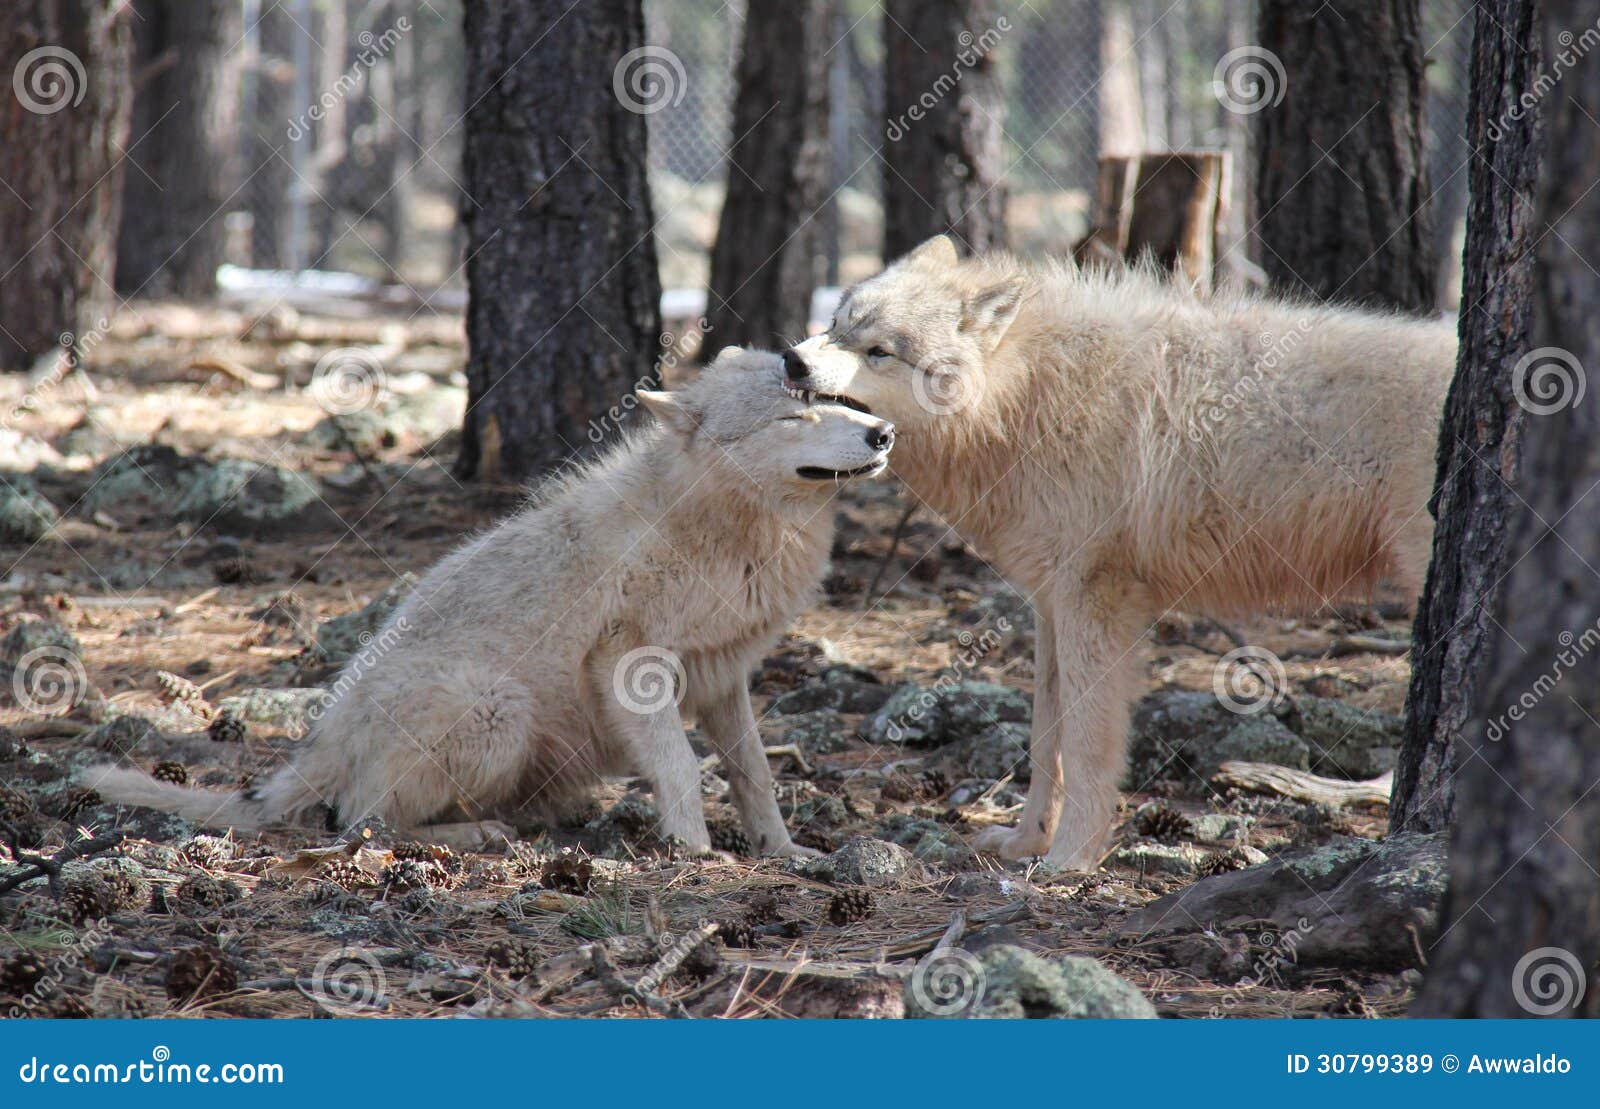 wolves showing dominate behavior